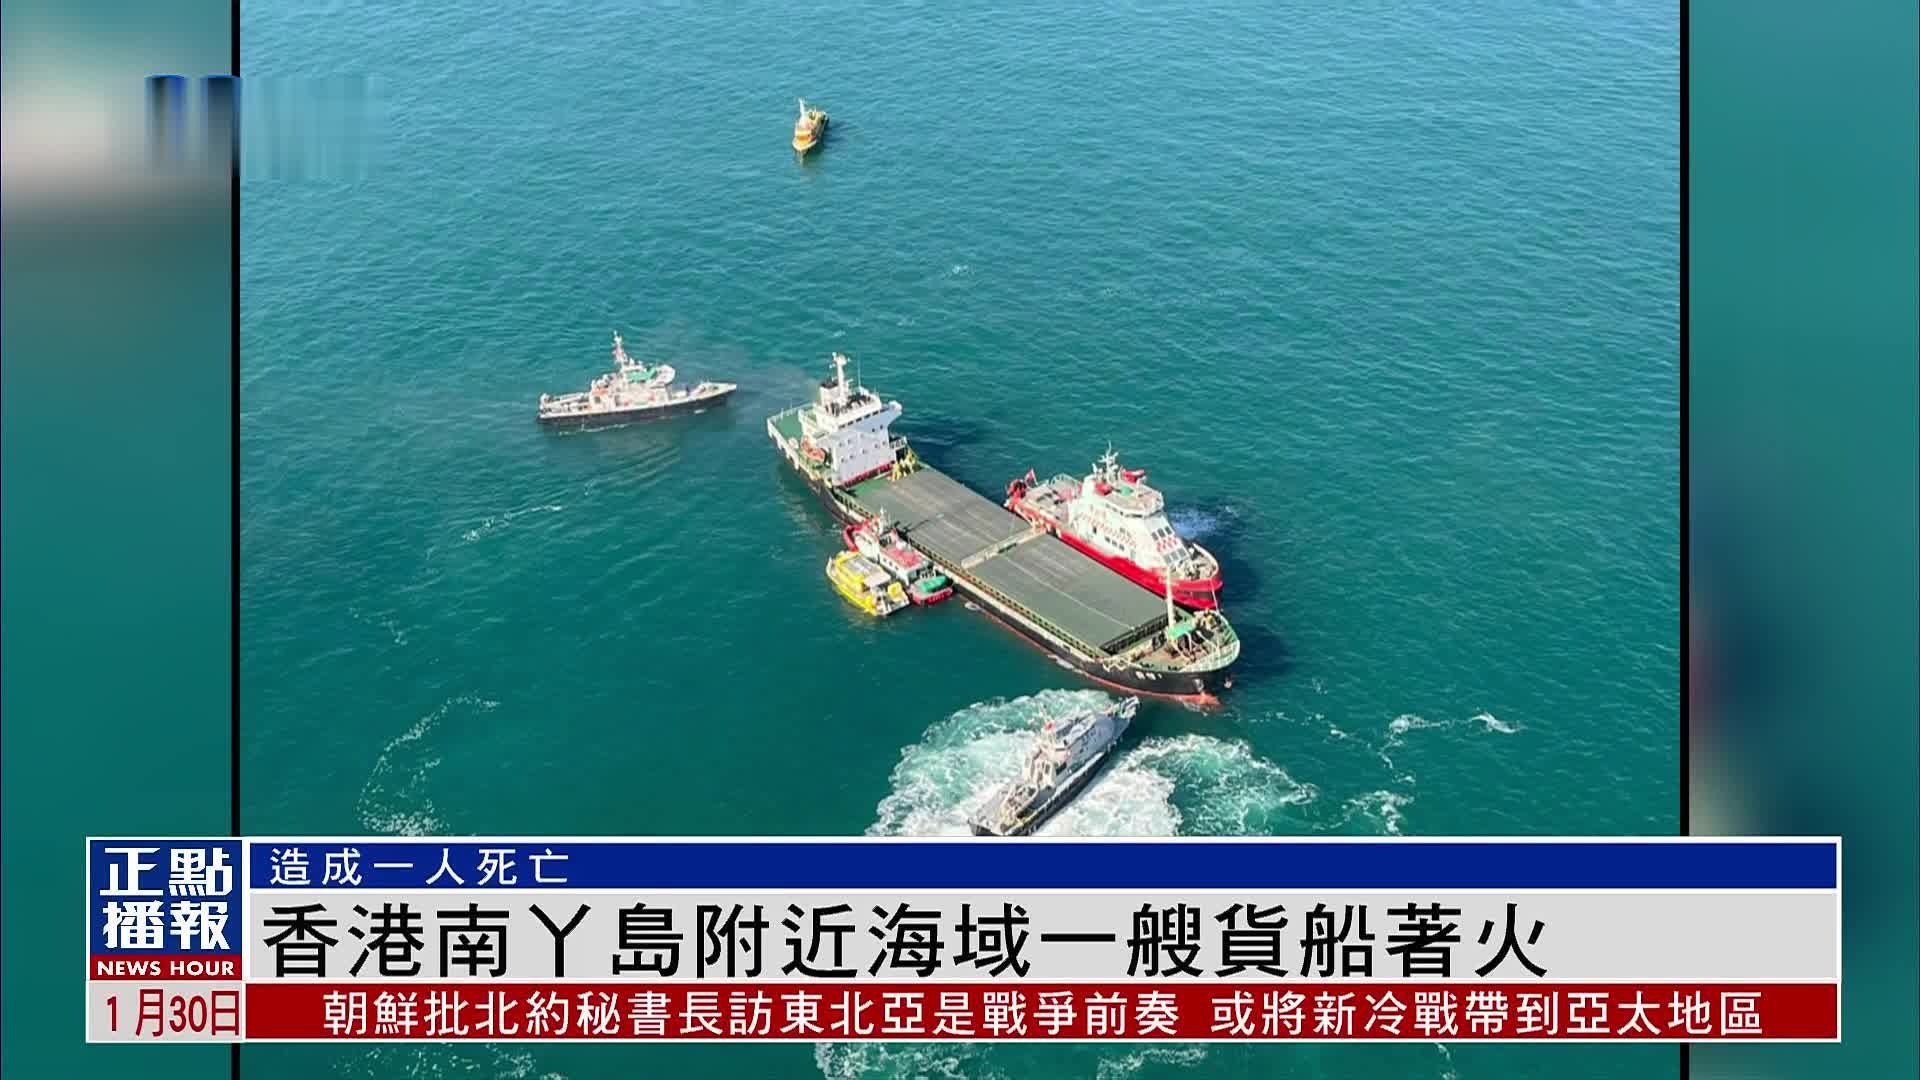 香港南丫岛附近海域一艘货船着火 造成一人死亡